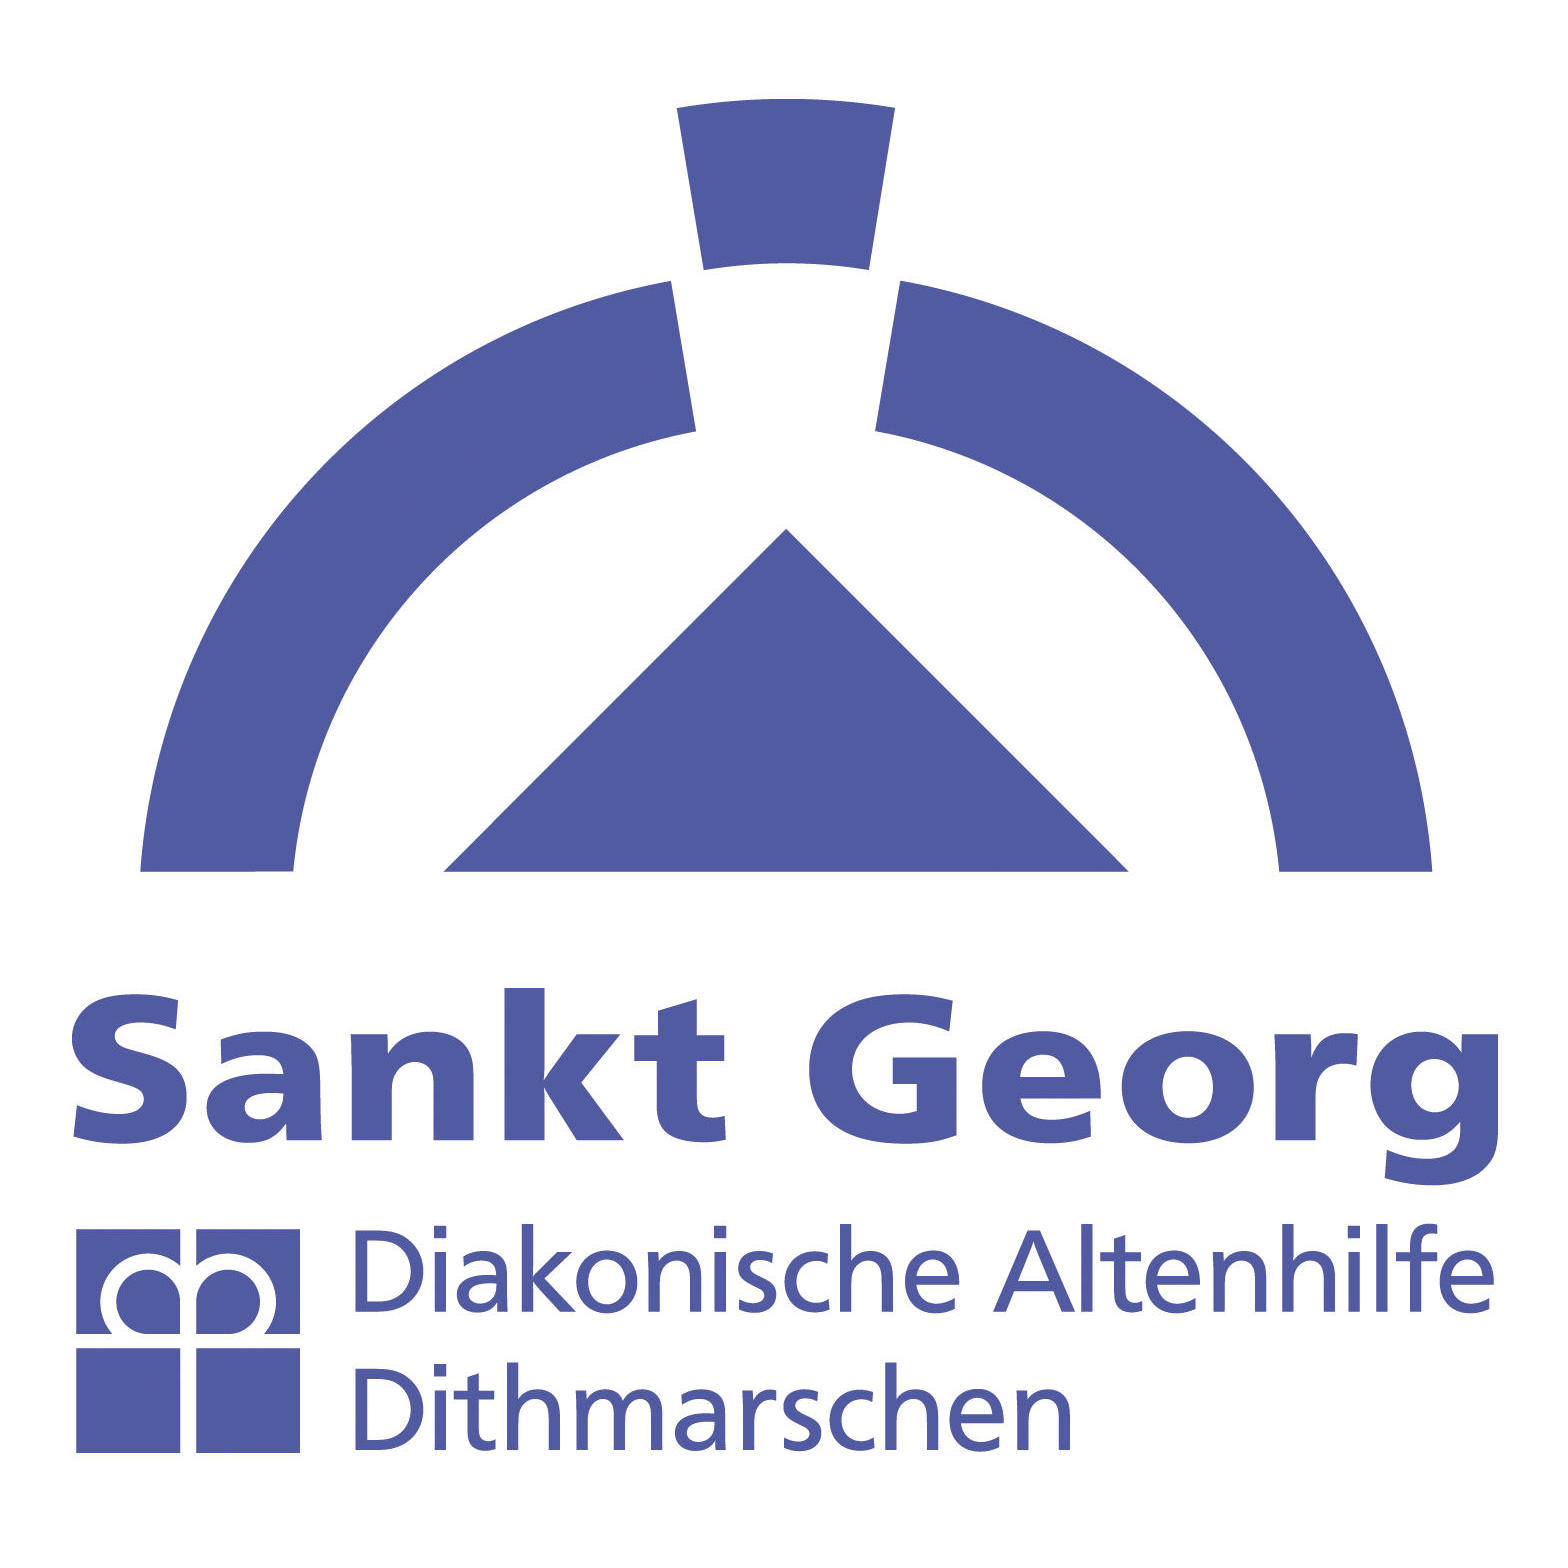 St. Georg Diakonische Altenhilfe Norderdithmarschen in Heide in Holstein - Logo